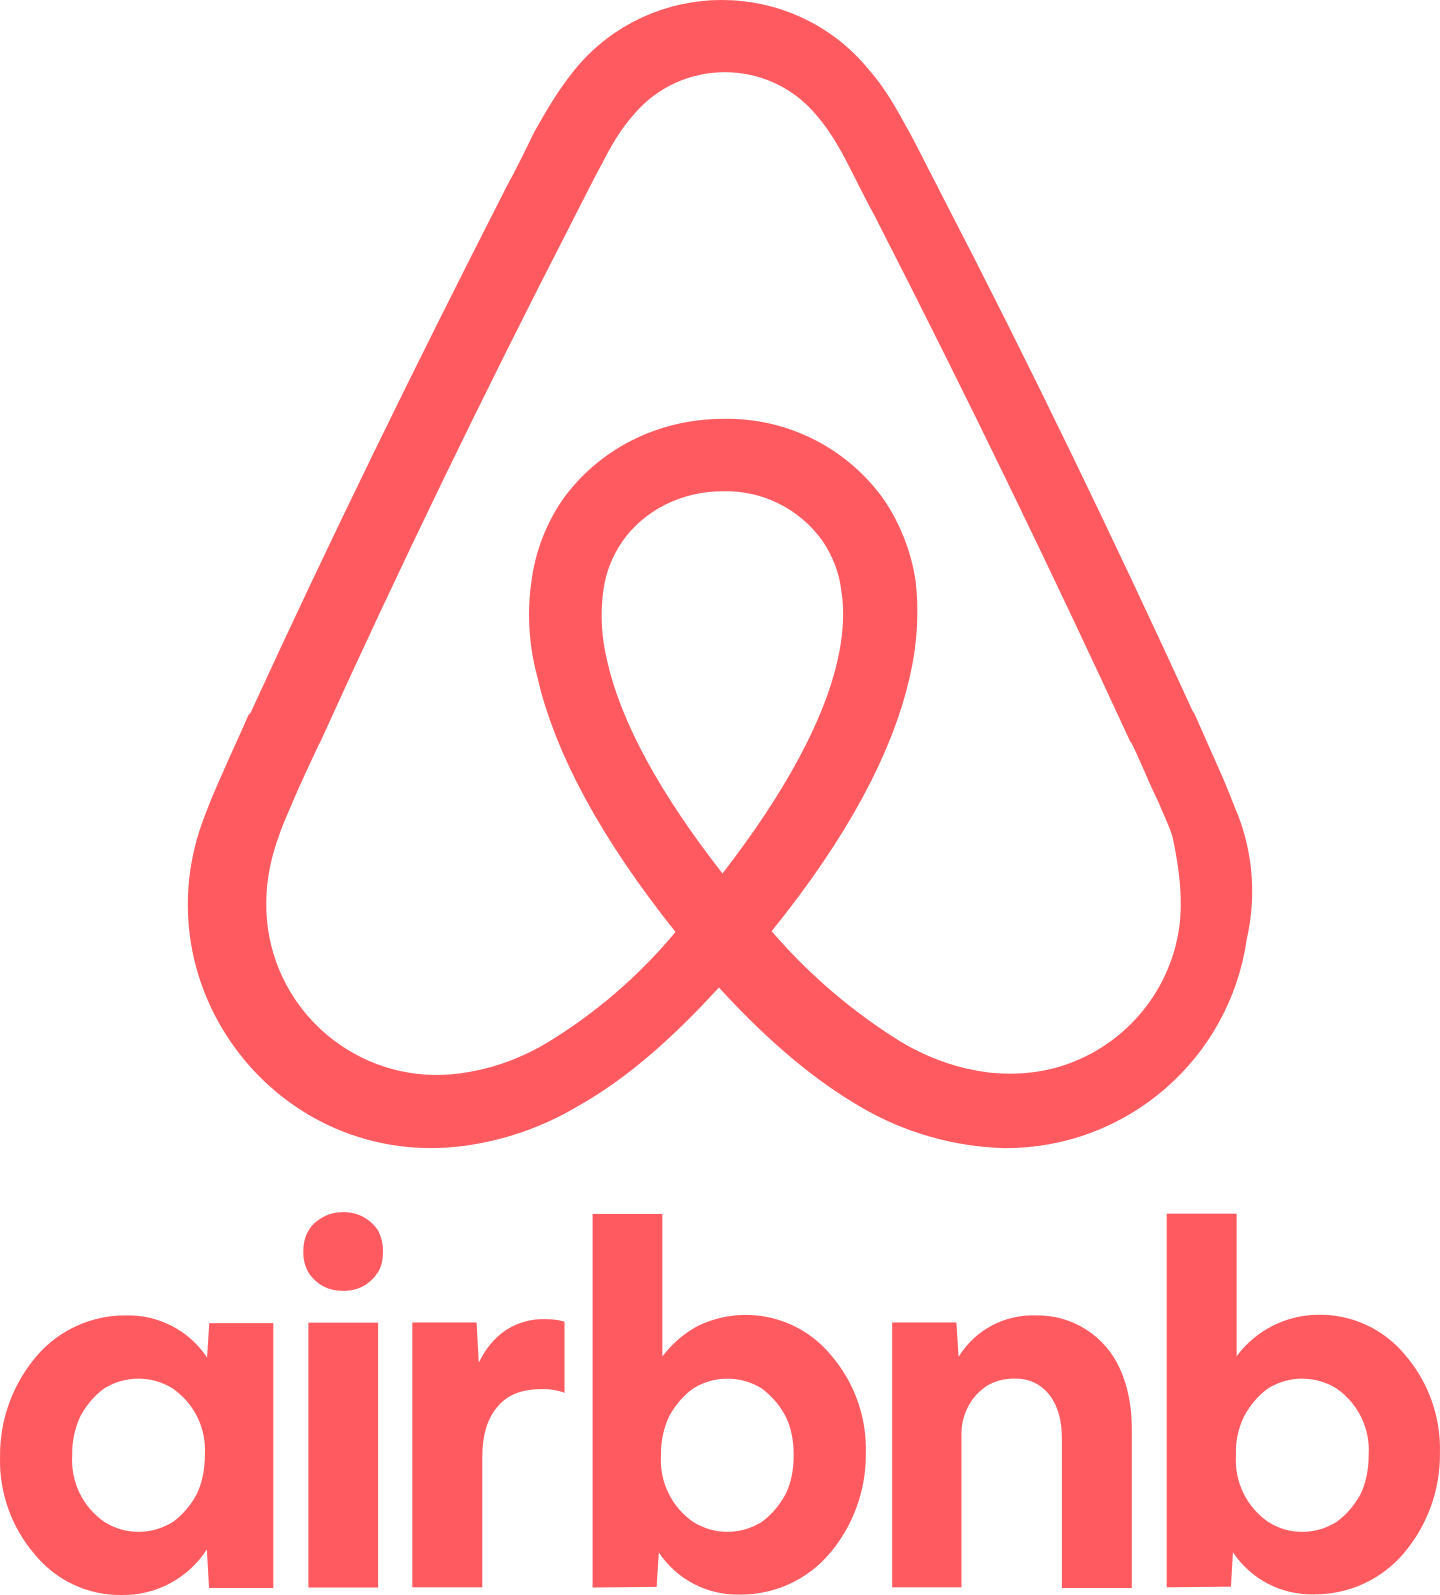 airbnb logo 3 1 - Airbnb Logo